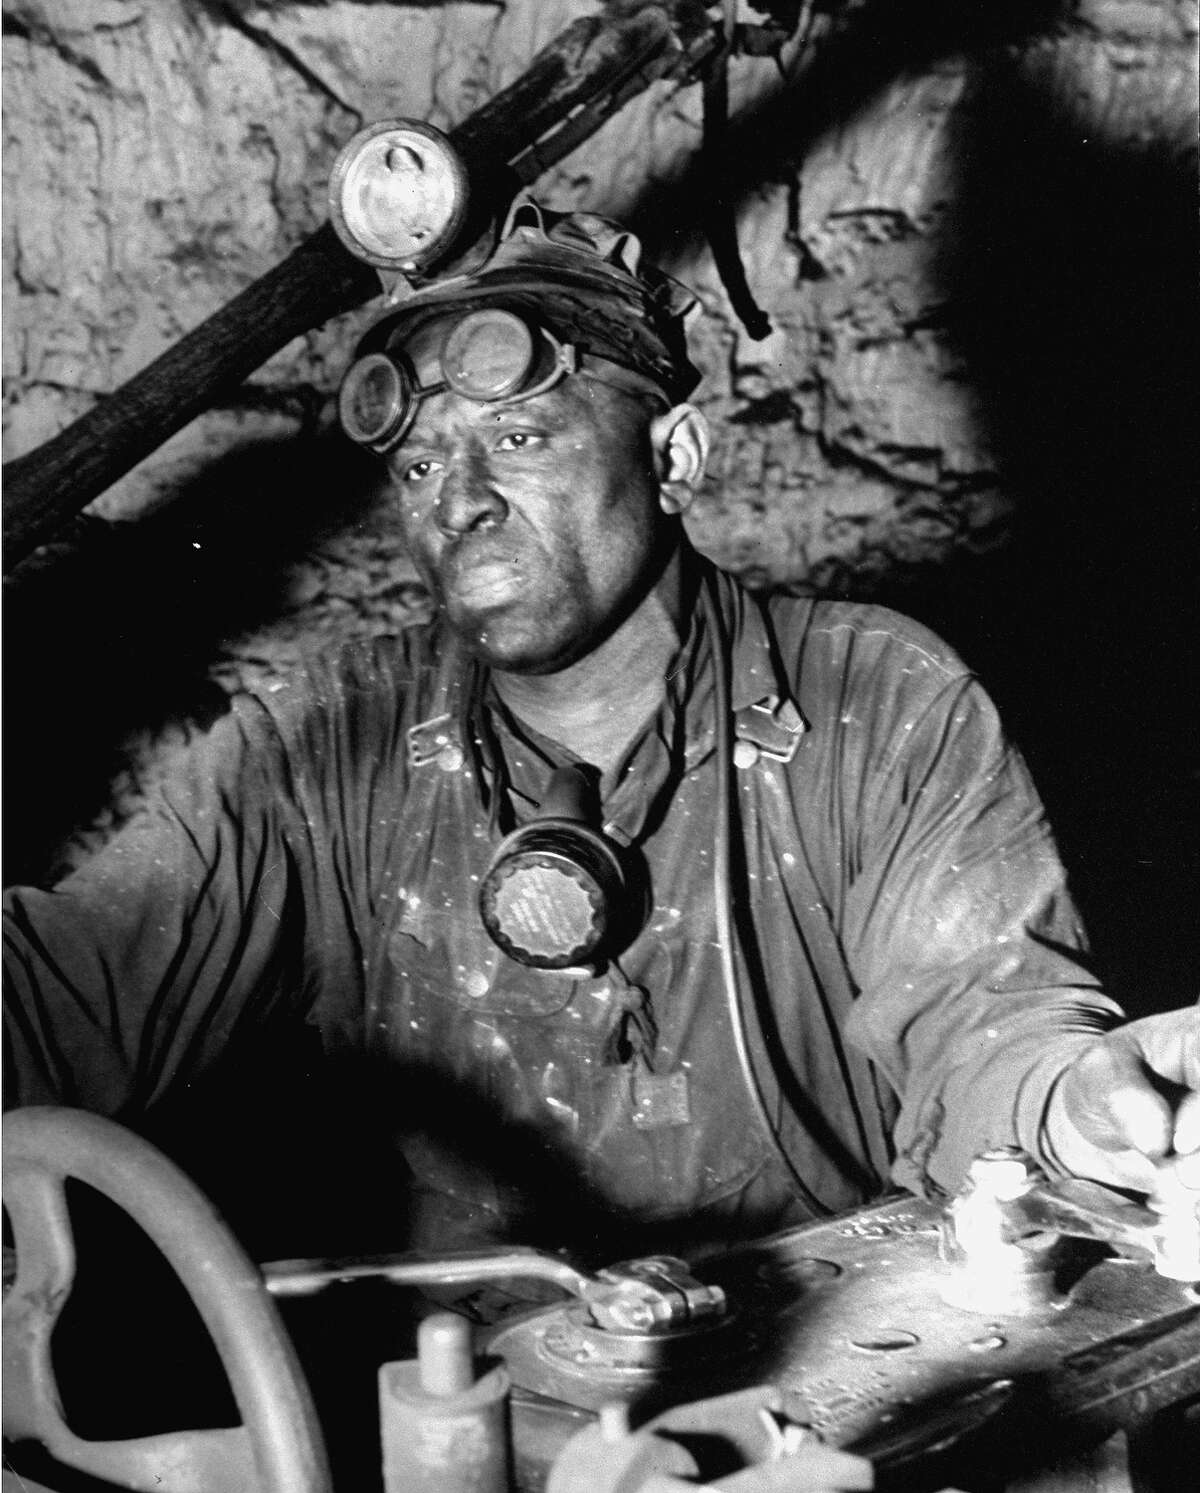 Coal miner, 1942